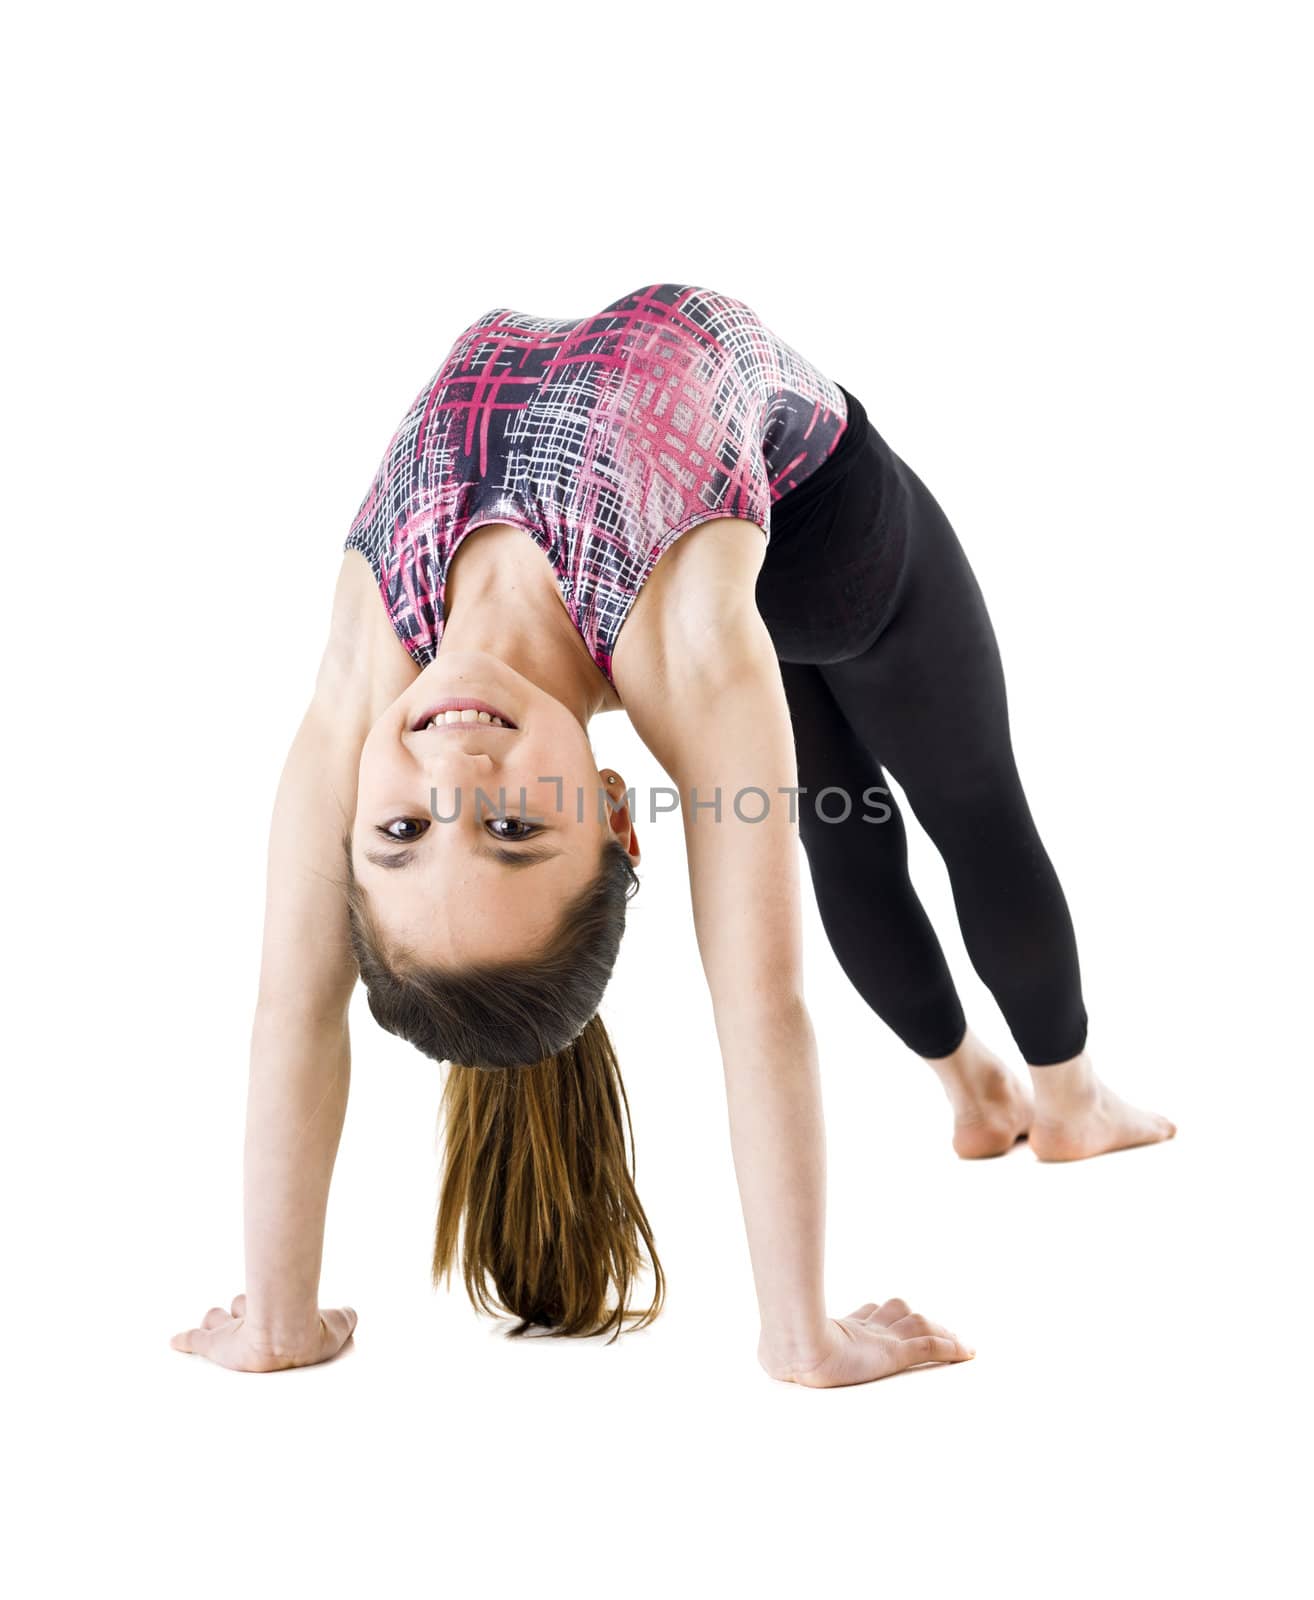 Gymnastic Girl by gemenacom